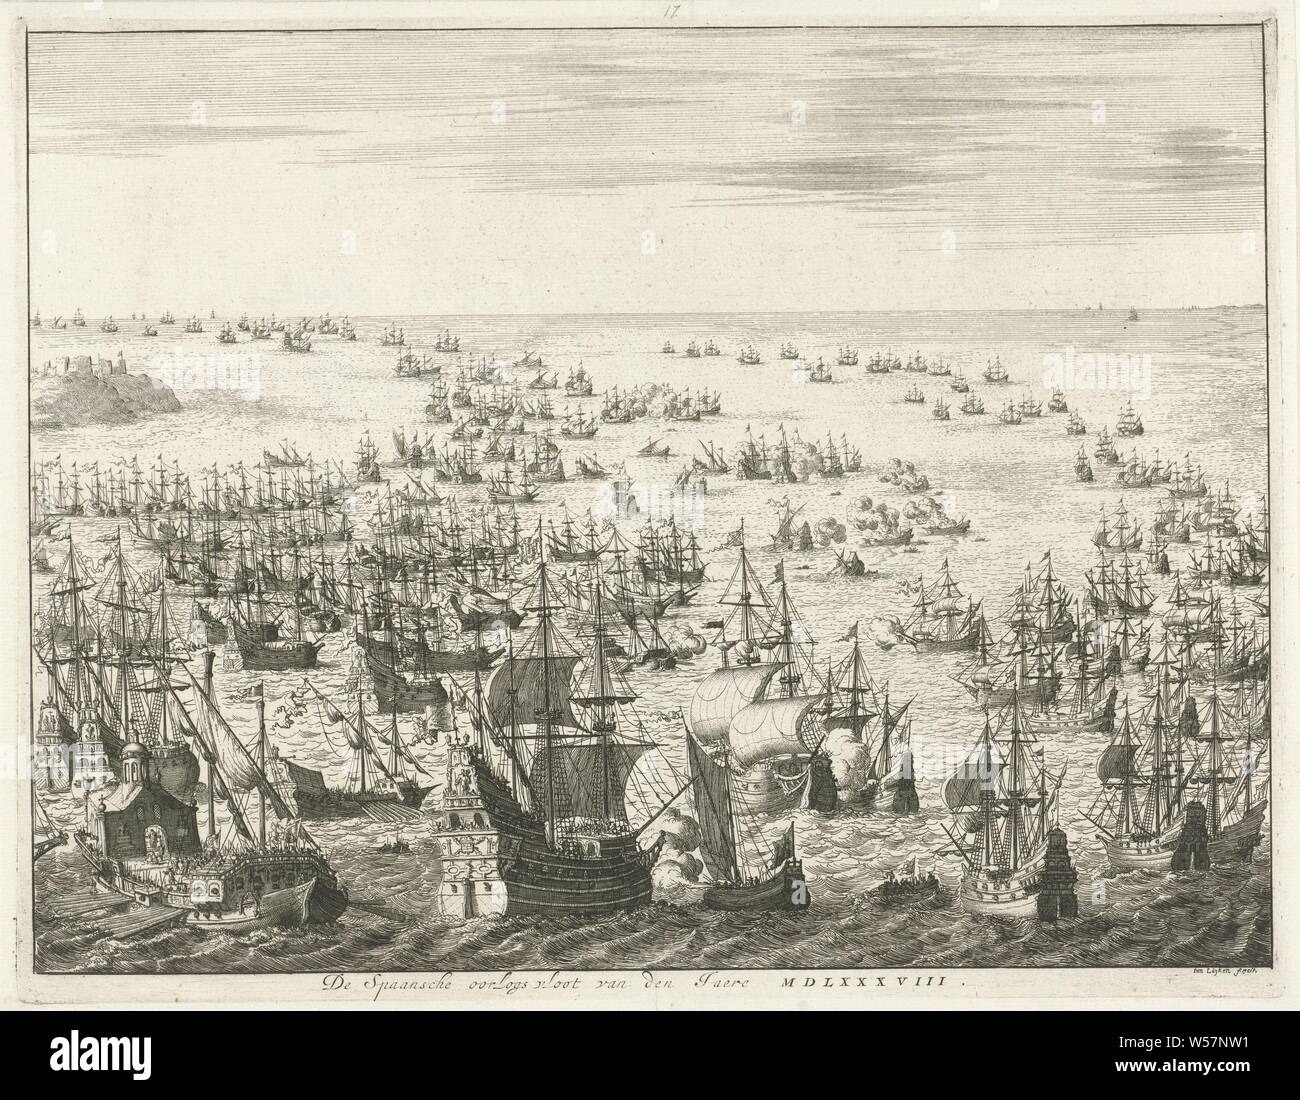 Chute de l'Armada espagnole, 1588 La guerre de la flotte espagnole Jaere MDLXXXVIII (titre sur l'objet), chute de l'Invincible Armada espagnole ou flotte, entre le 31 juillet et le 12 août 1588. Bataille entre l'espagnol et l'anglais et néerlandais flottes au canal. Dans l'avant-plan d'une grande frégate espagnole est tiré sur un petit navire néerlandais avec la bannière de la ville de Leiden, à gauche une galère, bataille navale (force), Manche, Jan Luyken (mentionné sur l'objet), Amsterdam, 1679 - 1684, le papier, gravure, h 272 mm × W 351 mm Banque D'Images